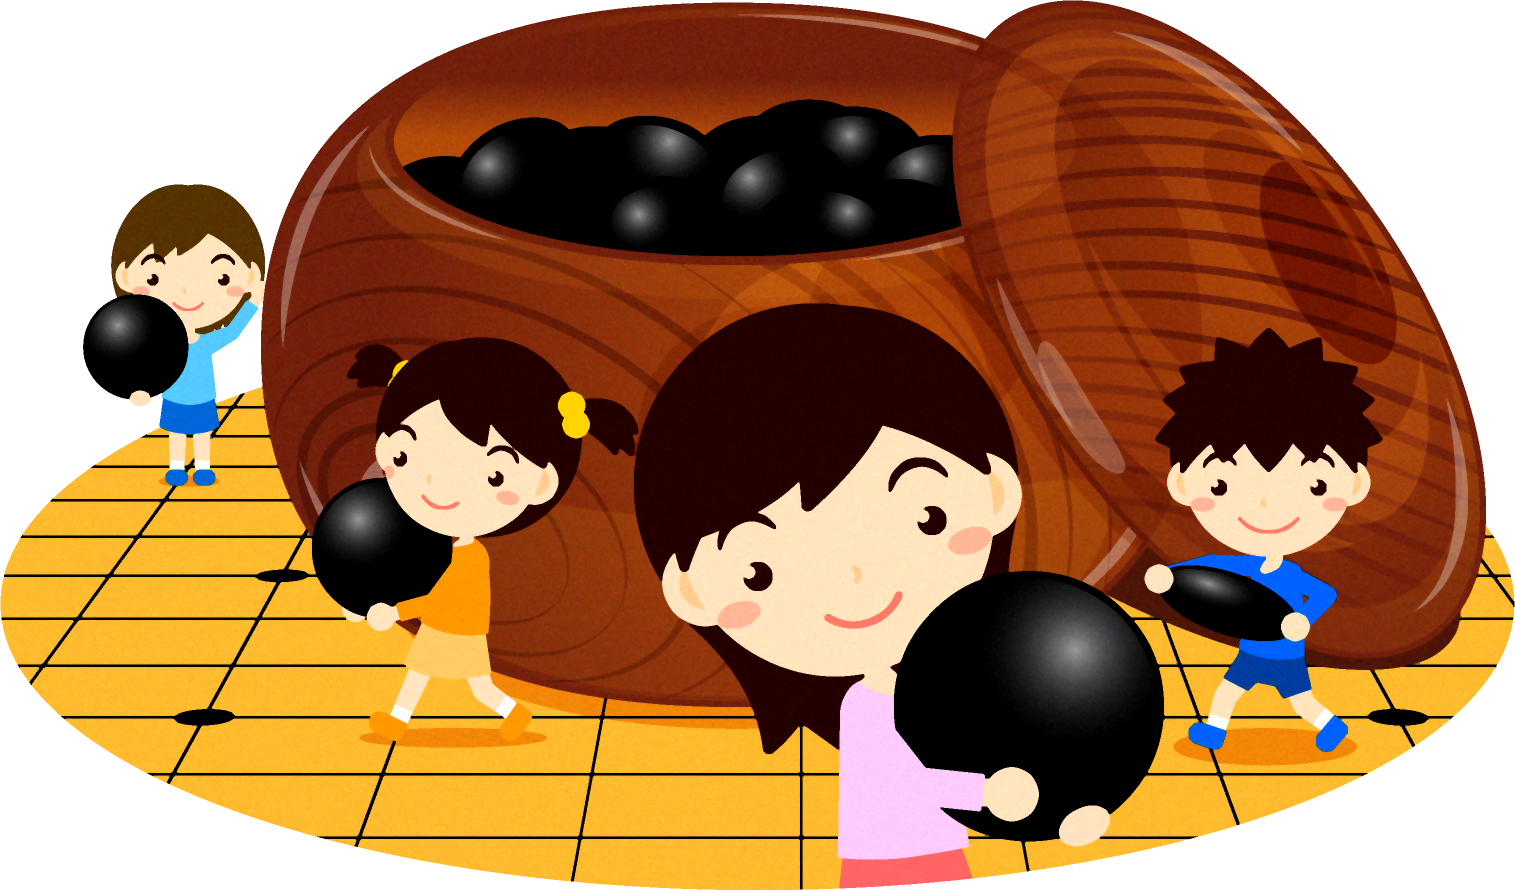 囲碁と子供達のイラスト2 黒い碁石 囲碁 趣味 素材のプチッチ